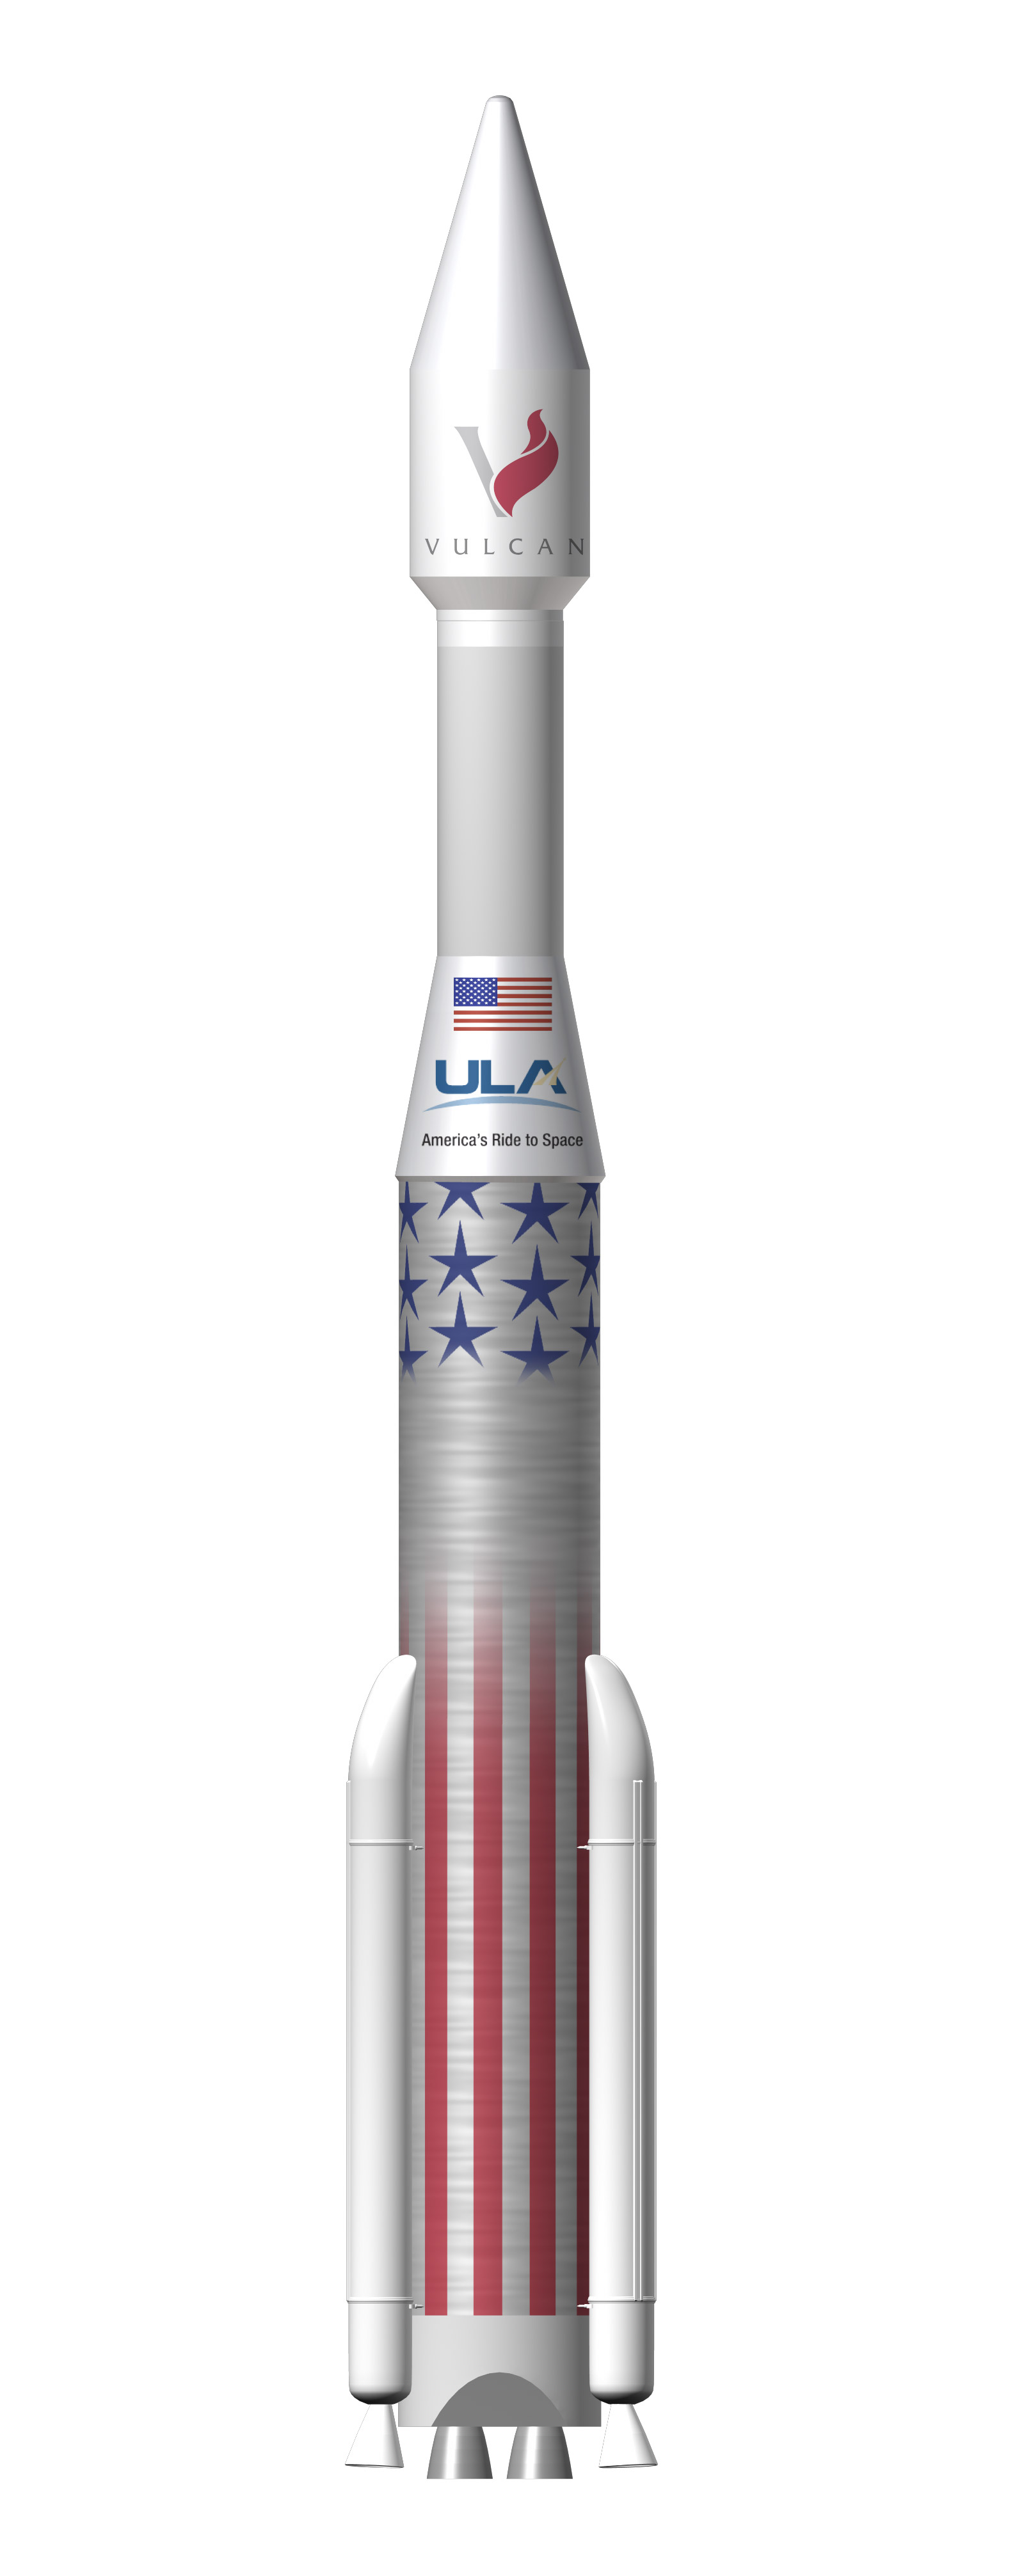 Raketa Vulcan s ÄŤtyĹ™metrovĂ˝m aerodynamickĂ˝m krytem.  Zdroj: http://spaceflightnow.com/